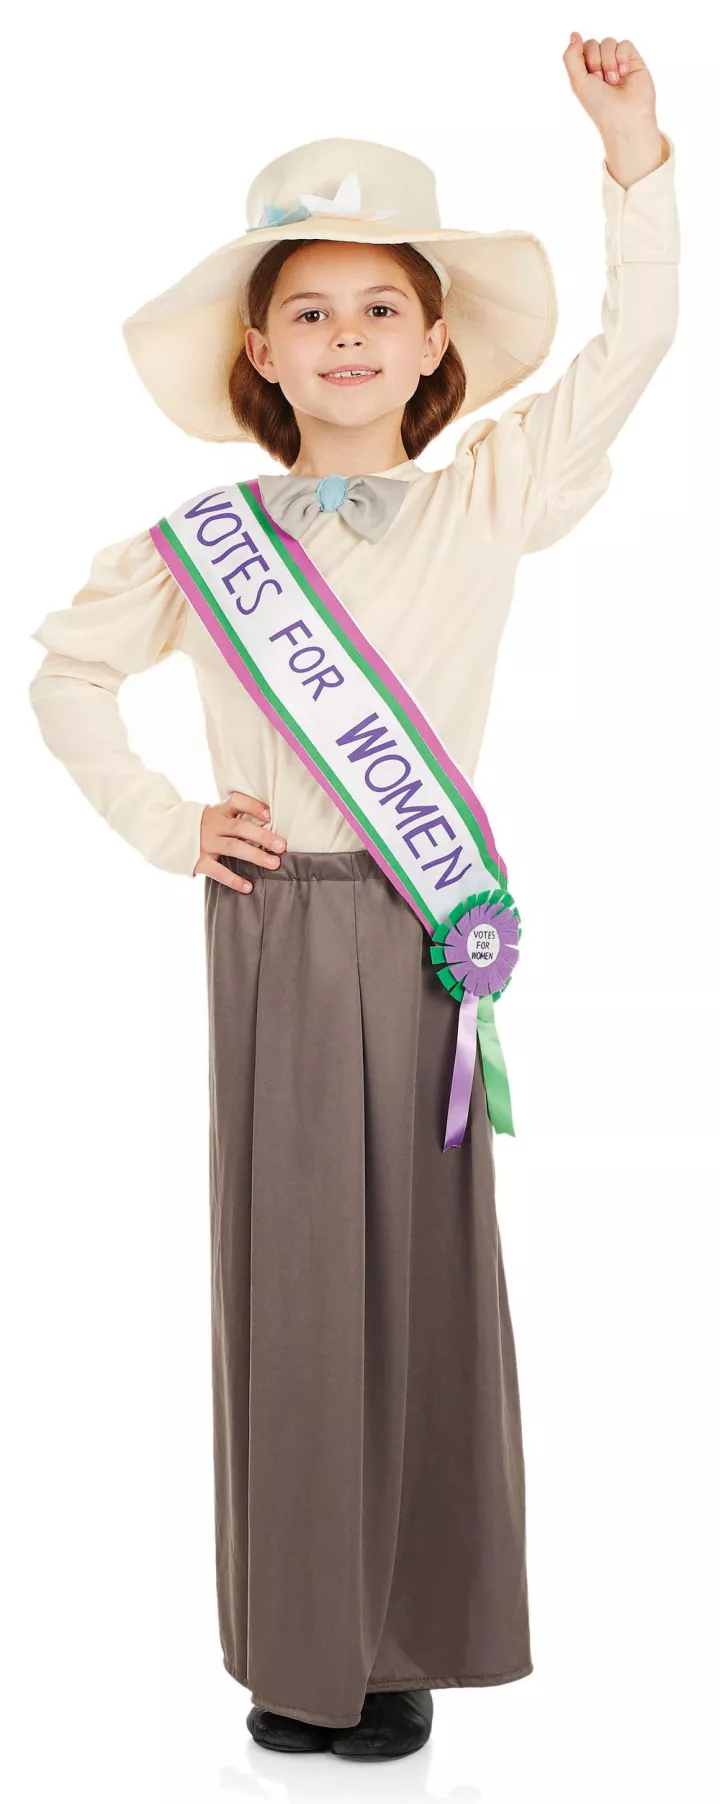 Suffragette costume